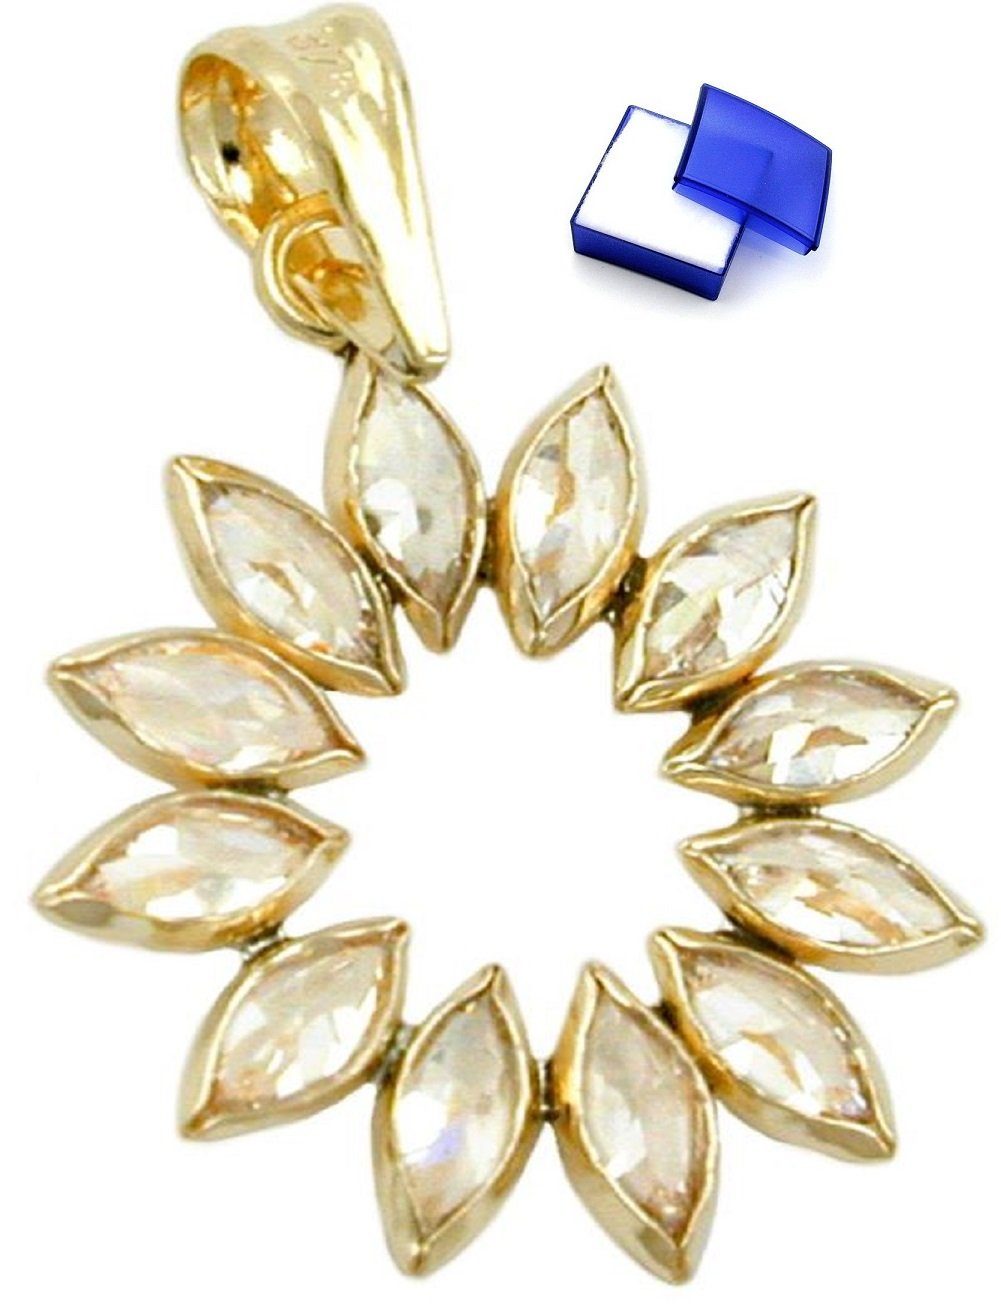 unbespielt Kettenanhänger Kettenanhänger Anhänger Blume aus 12 weissen Zirkonias 9 Karat Gold 14 mm inklusive Schmuckbox, Goldschmuck für Damen und Herren